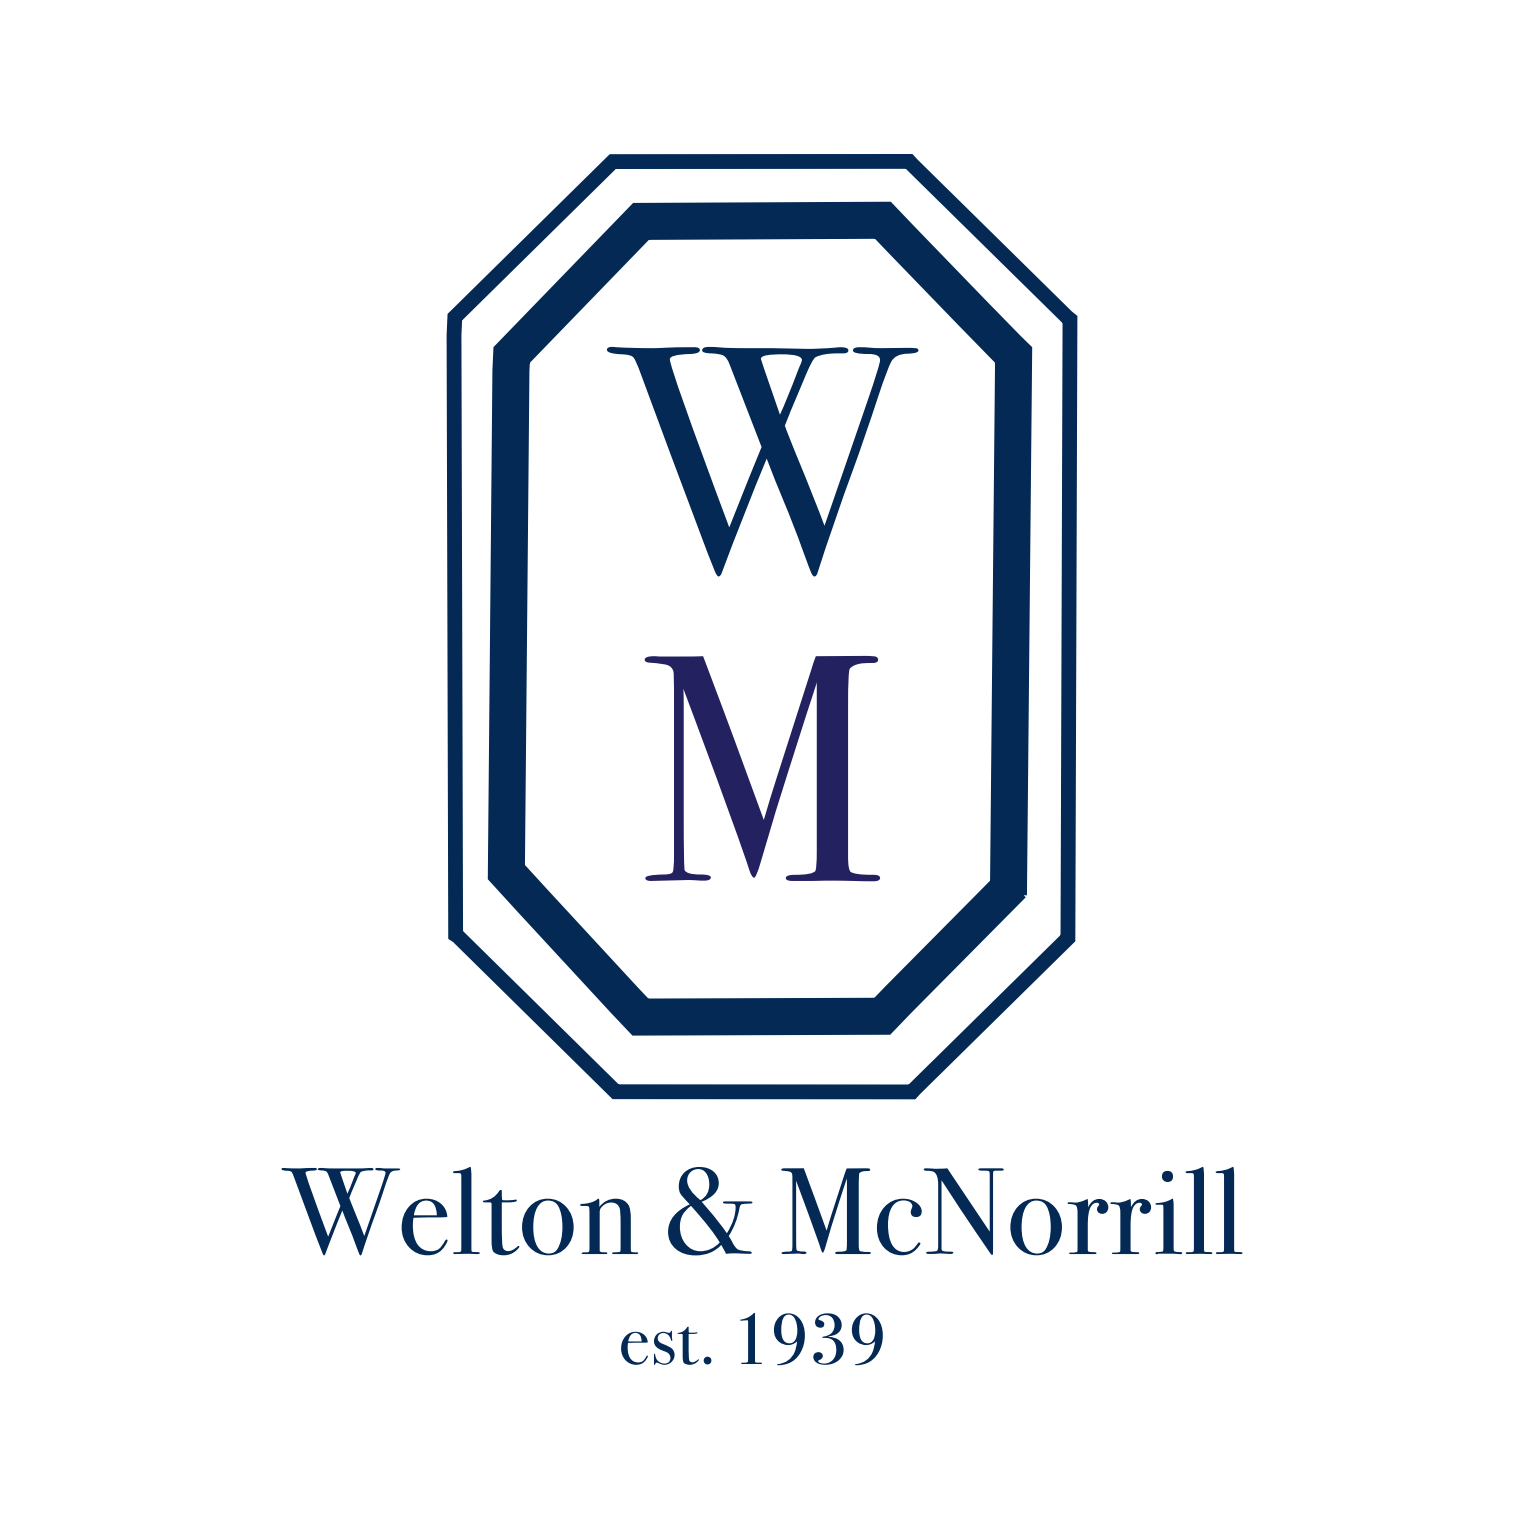 Welton & McNorrill R E